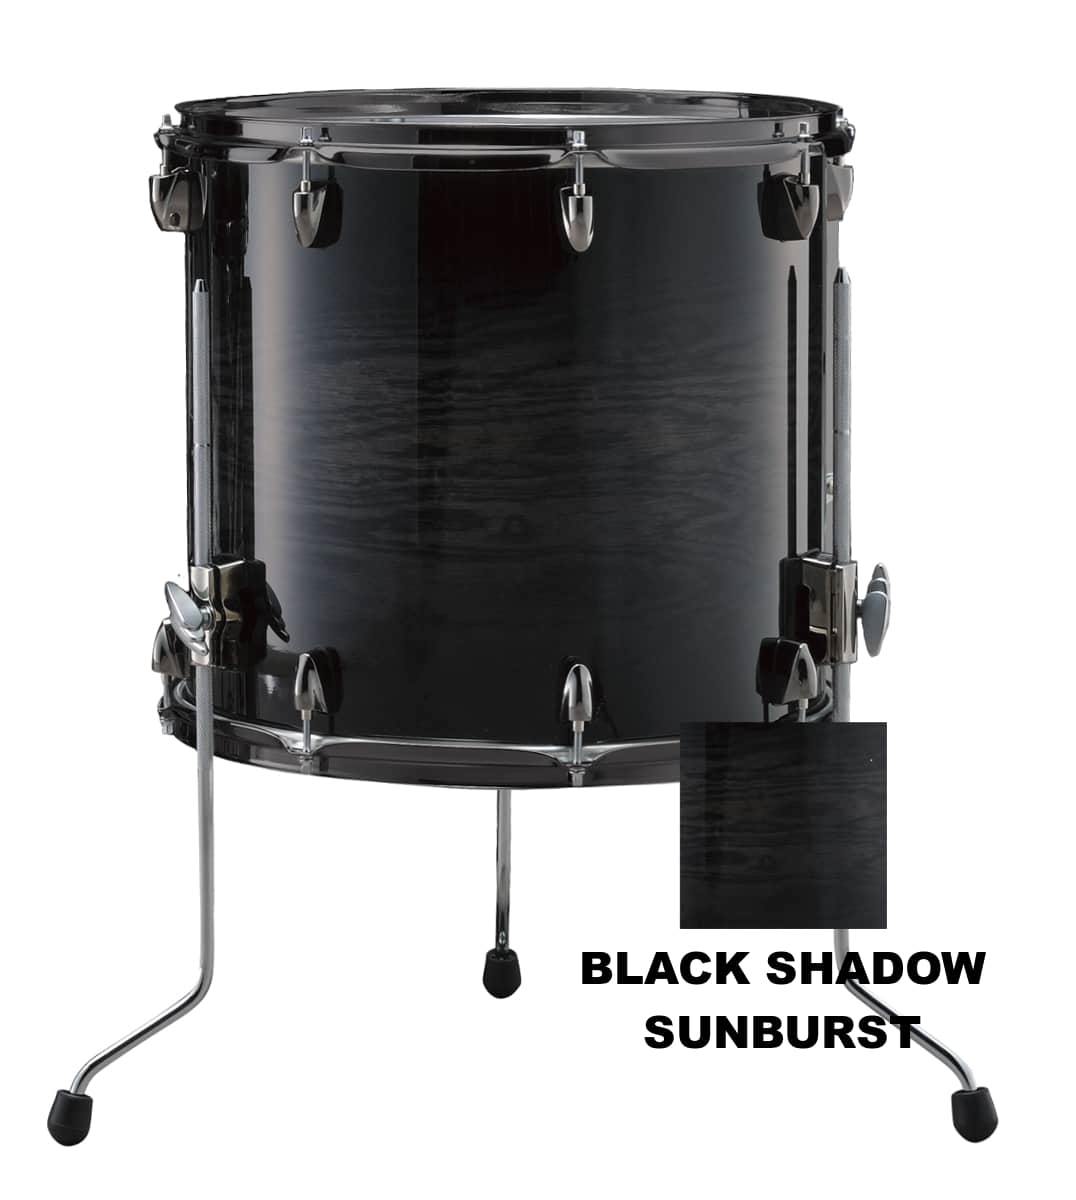 Lnf1413 - 14 X 13 - Black Shadow Sunburst pour 409